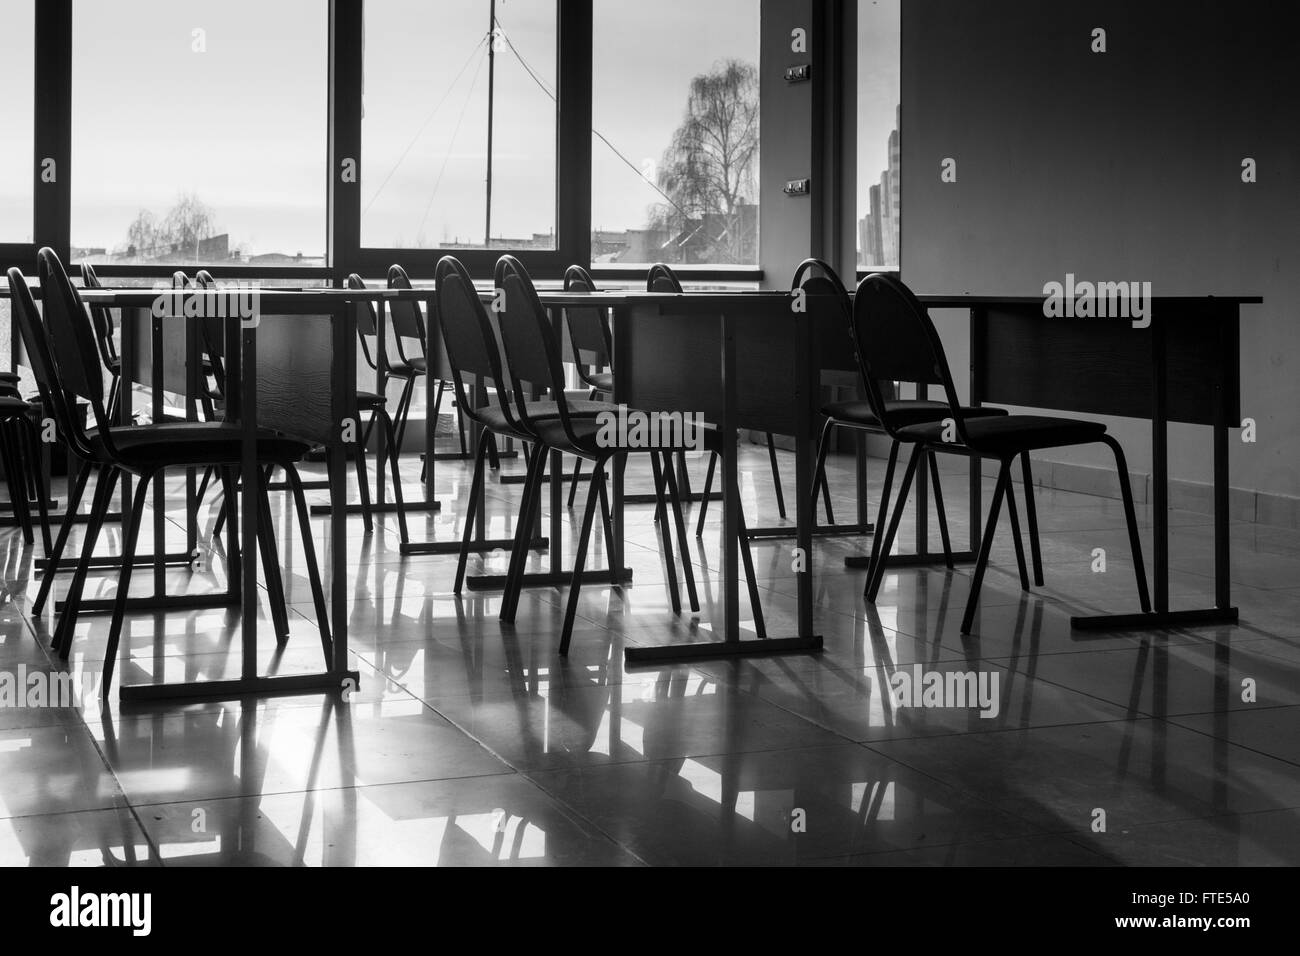 Lignes et lignes de conférence chaises vides pris dans la lumière naturelle dans une salle de classe à l'école. Image en noir et blanc wifi Banque D'Images